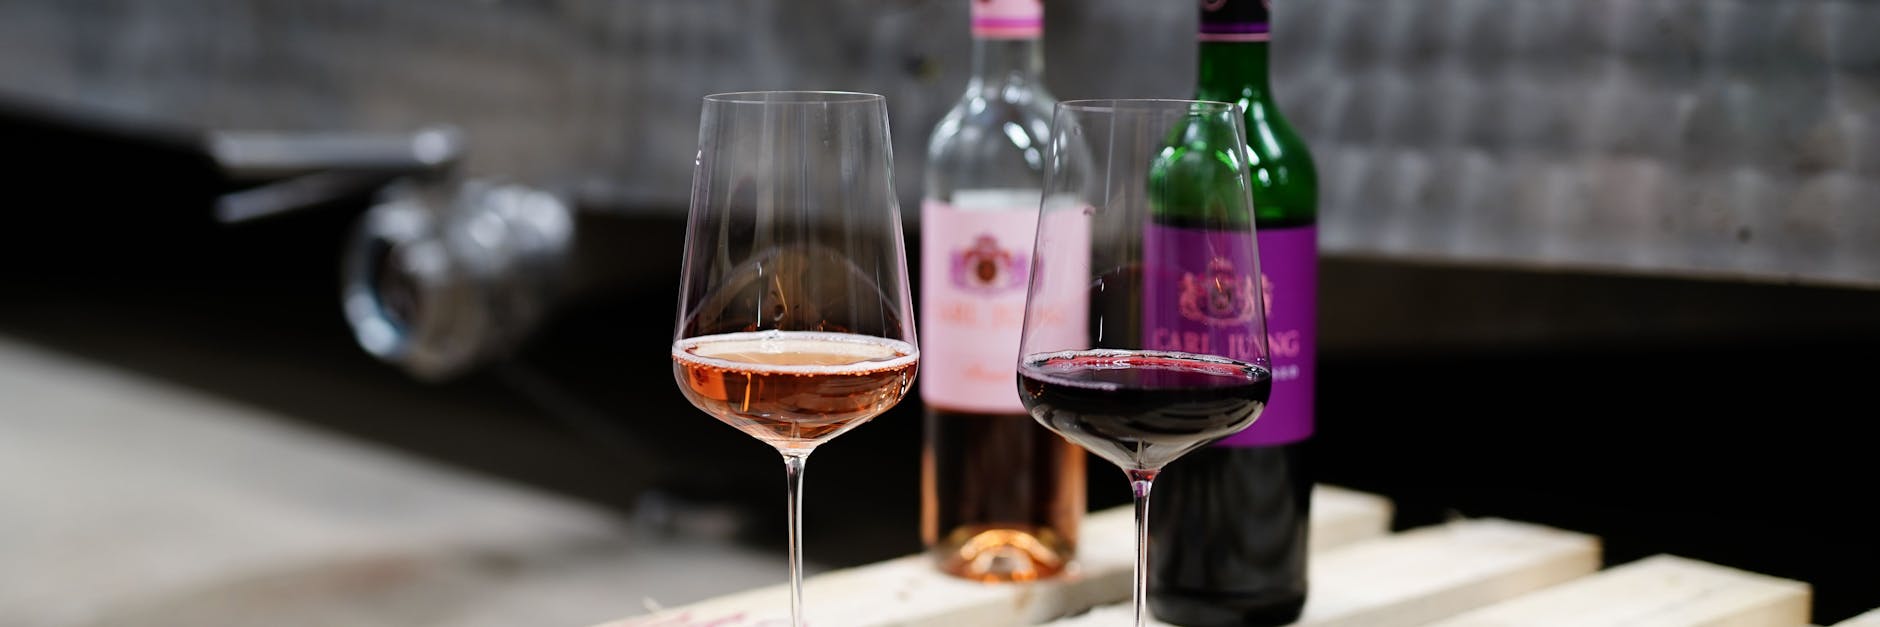 Die Weinkellerei Carl Jung beschäftigt sich bereits seit über 100 Jahren mit dem Entzug des Alkohols aus Wein.&nbsp;